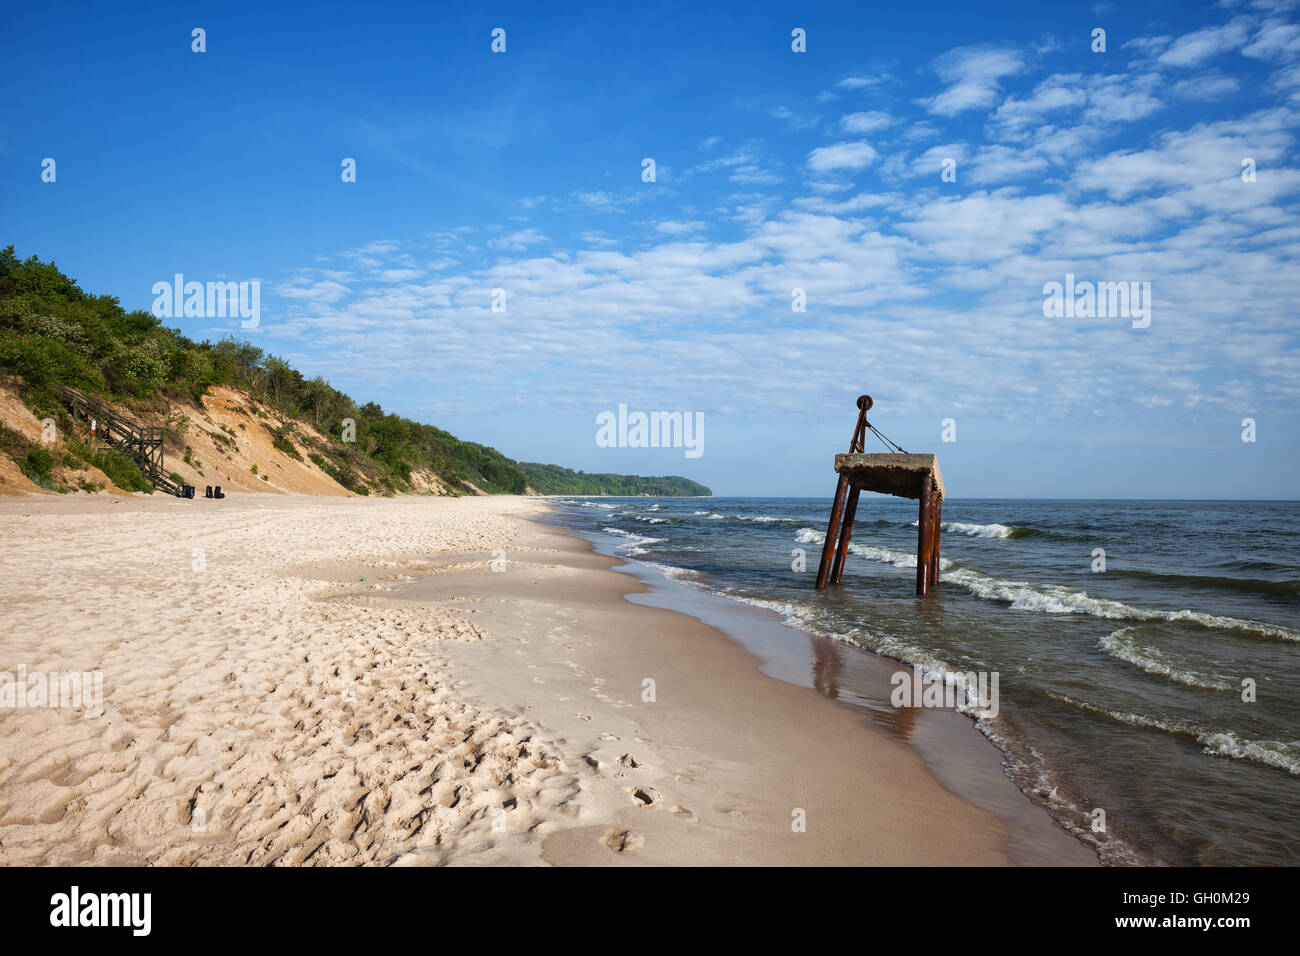 Lunga spiaggia di sabbia bianca a Mar Baltico in Chlapowo, vicino Wladyslawowo in Polonia, gru vecchia struttura arrugginito sull'acqua Foto Stock